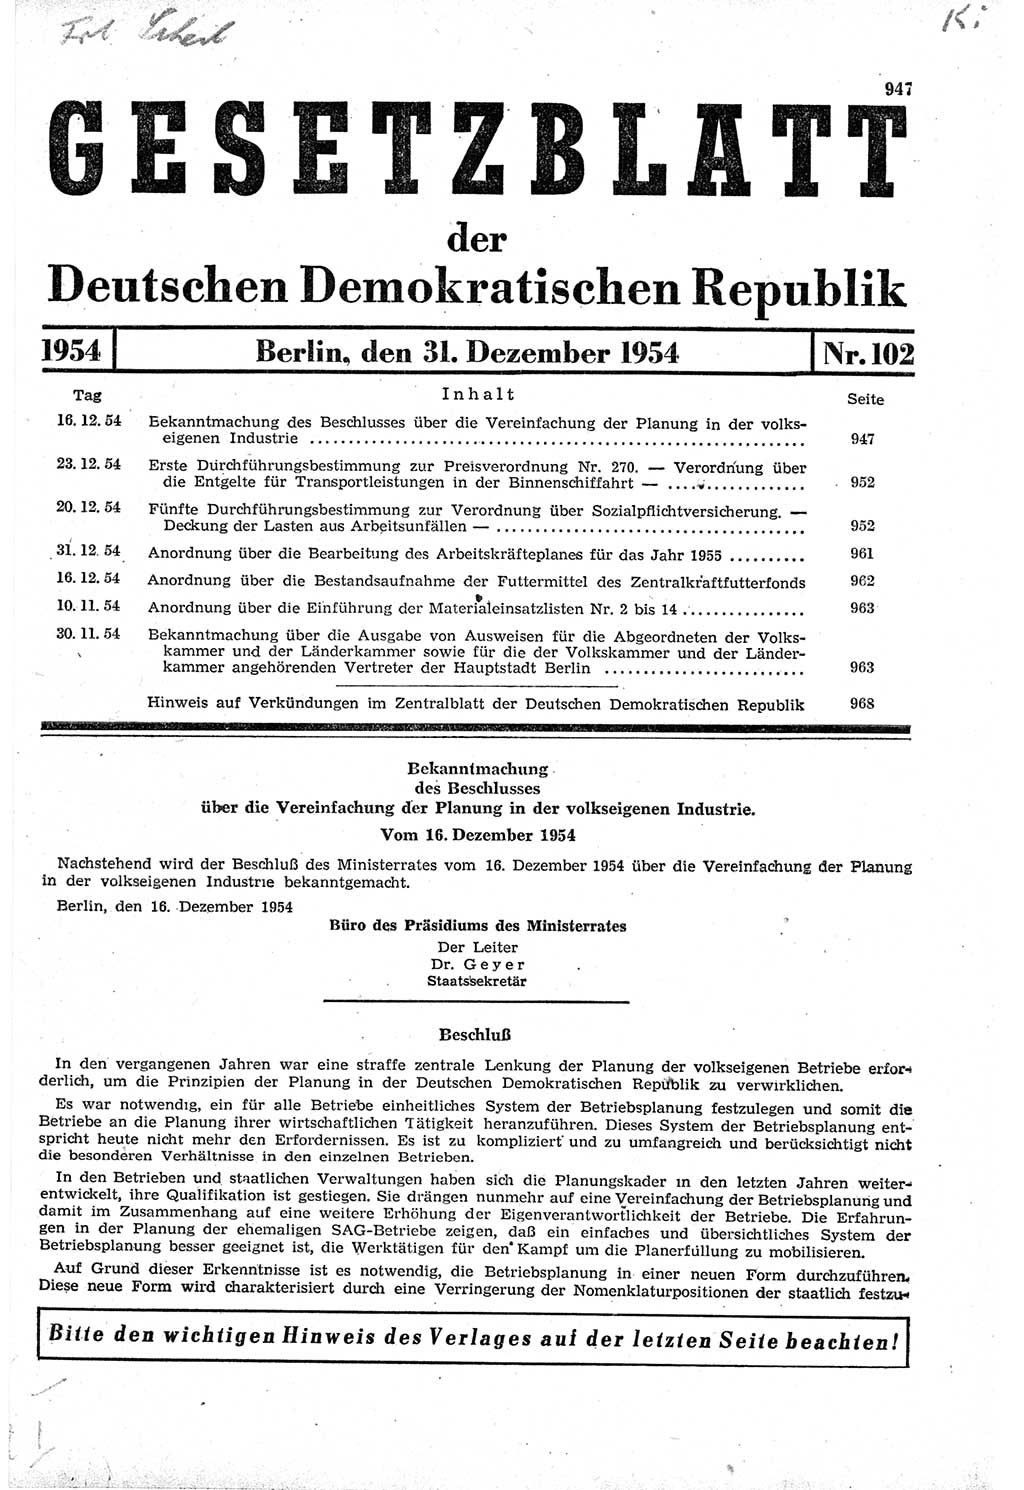 Gesetzblatt (GBl.) der Deutschen Demokratischen Republik (DDR) 1954, Seite 947 (GBl. DDR 1954, S. 947)